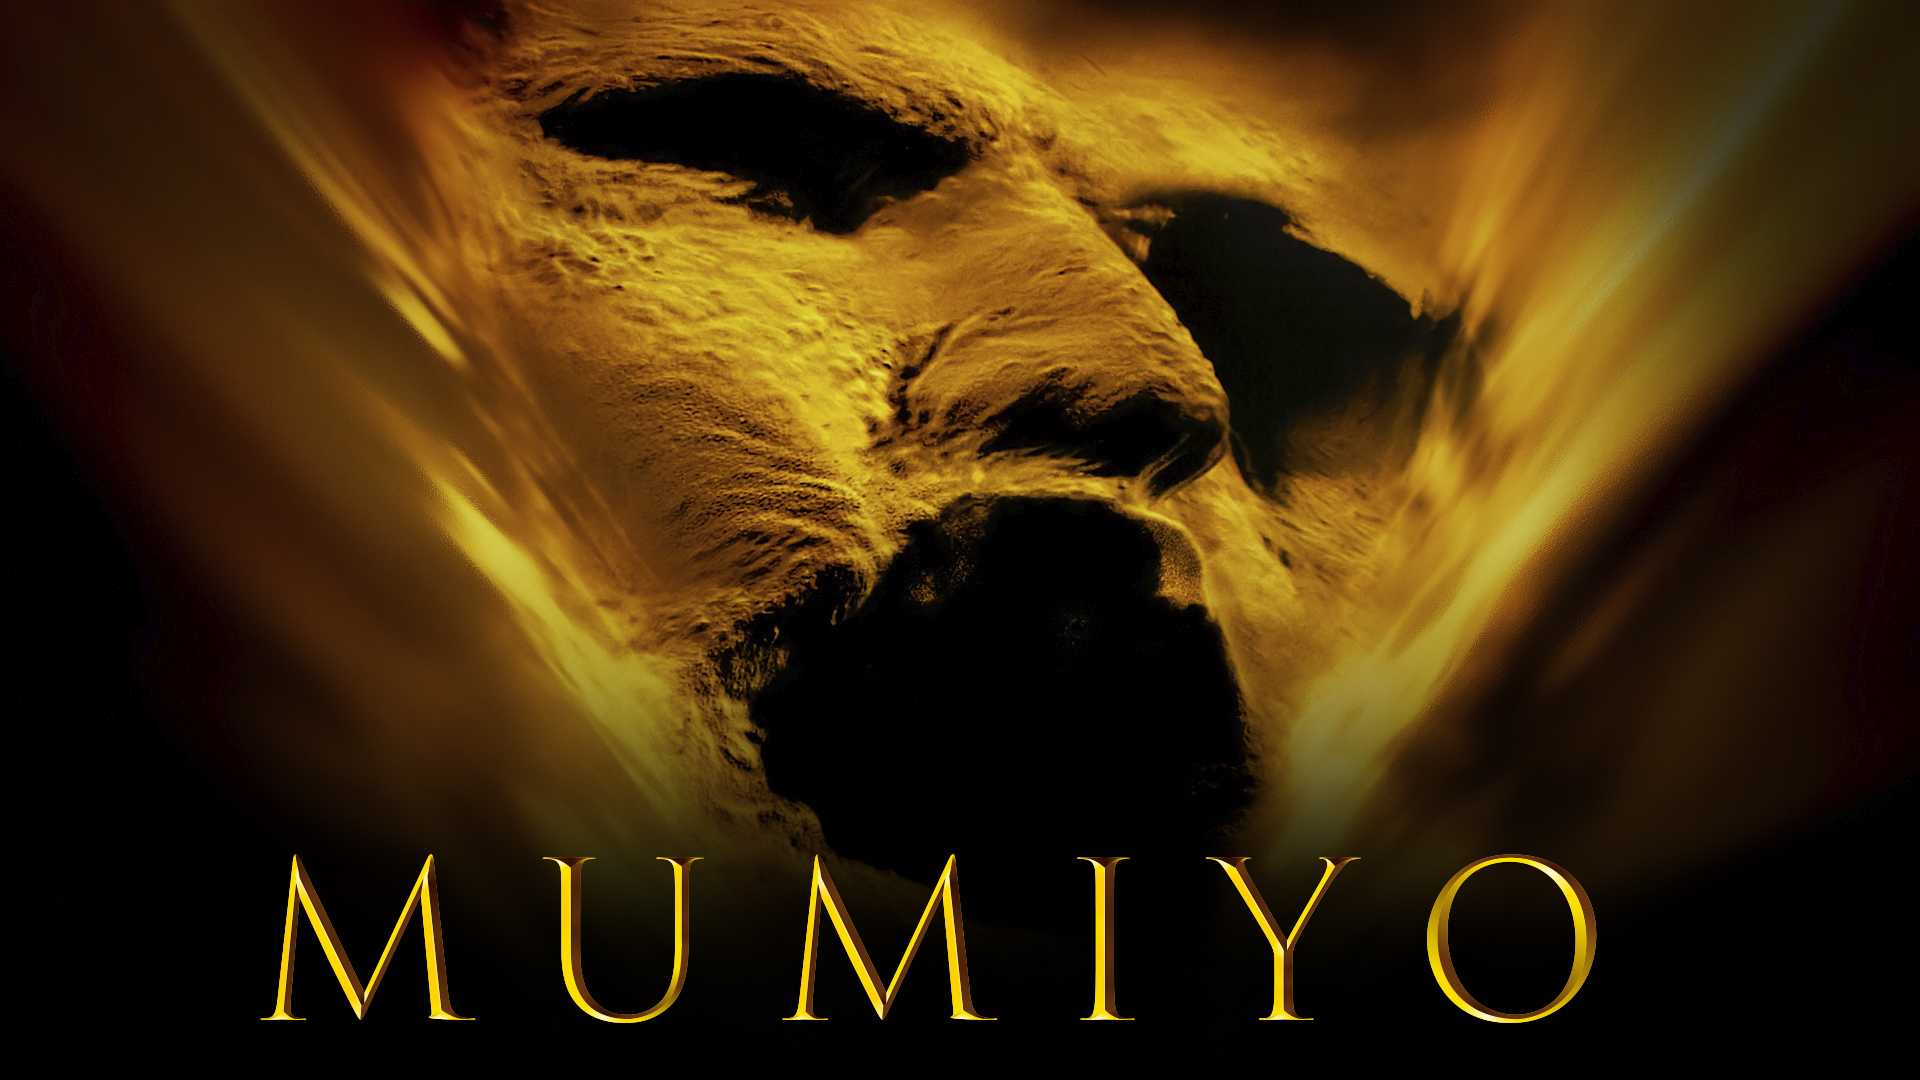 Mumiyo